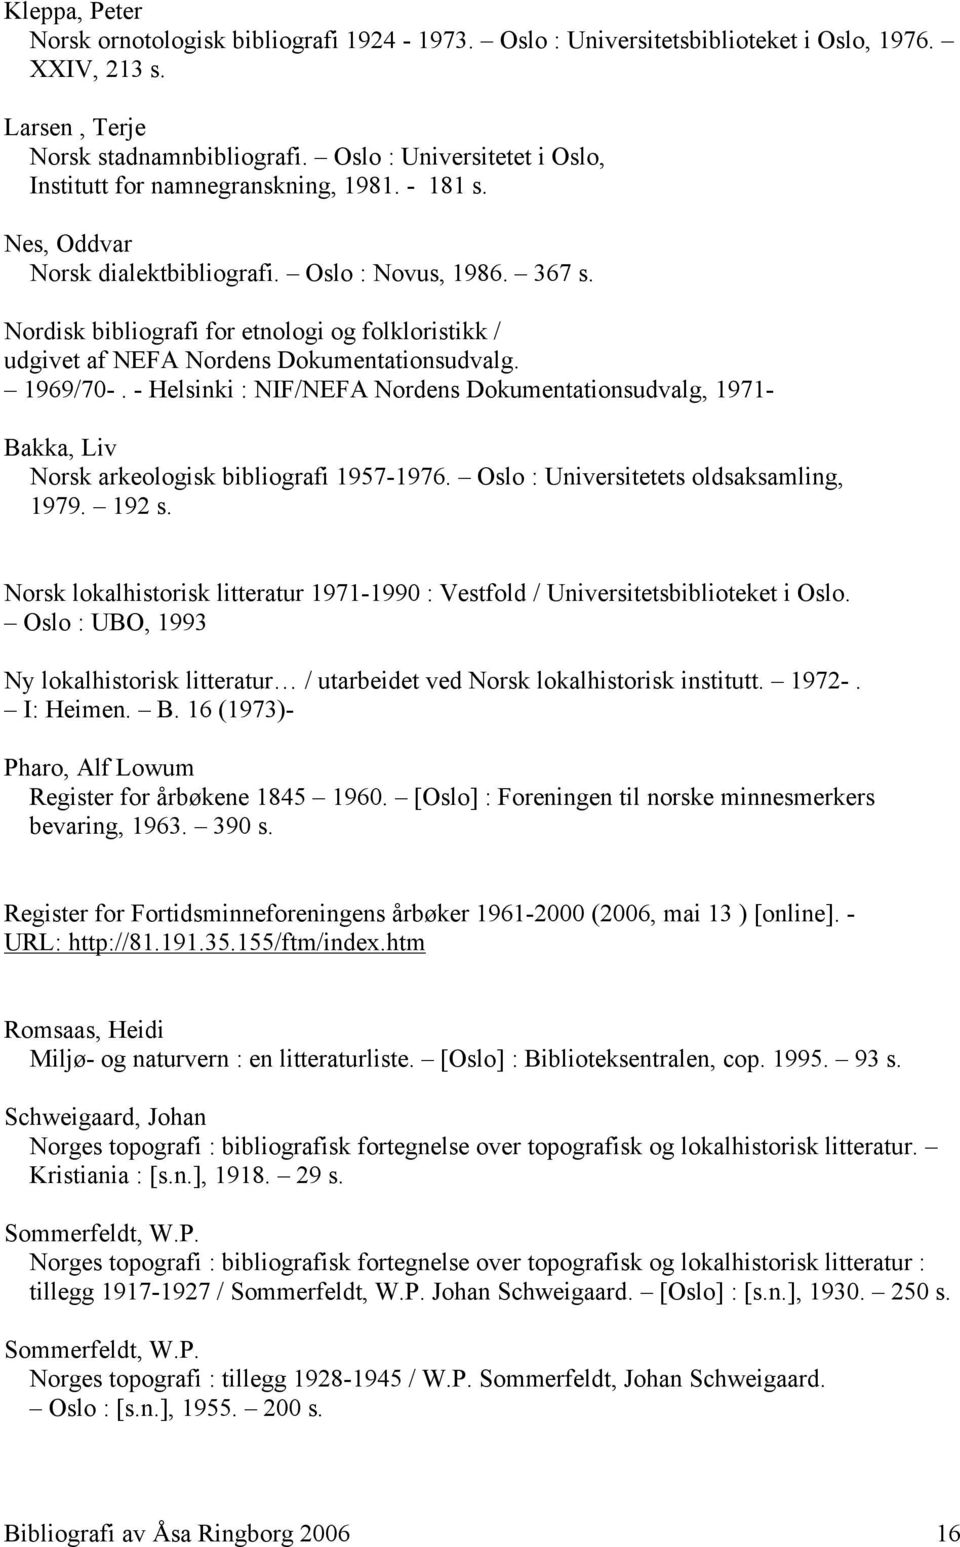 Nordisk bibliografi for etnologi og folkloristikk / udgivet af NEFA Nordens Dokumentationsudvalg. 1969/70-.